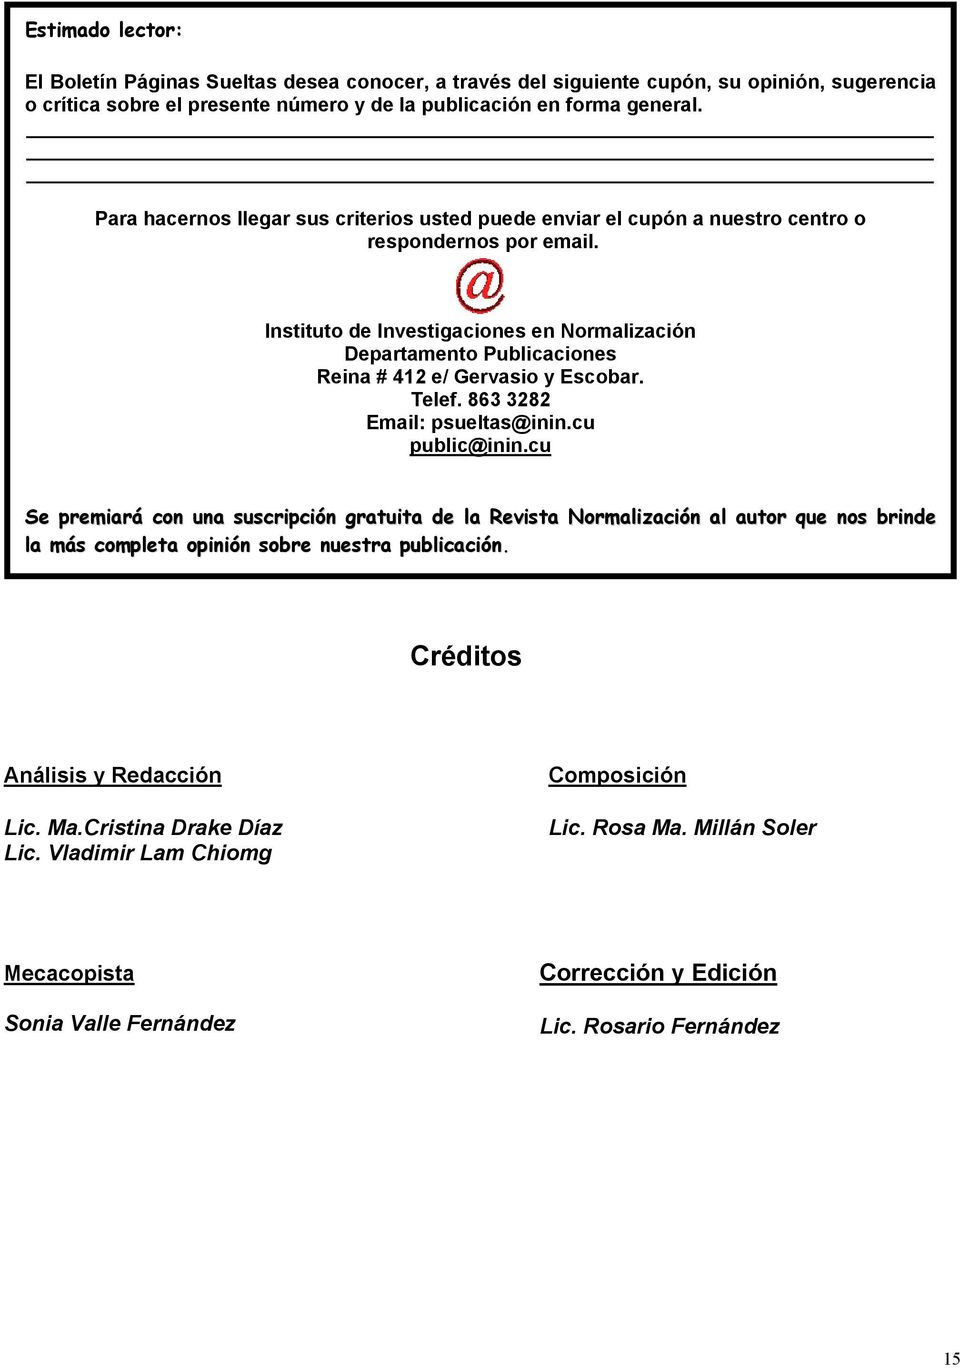 Instituto de Investigaciones en Normalización Departamento Publicaciones Reina # 412 e/ Gervasio y Escobar. Telef. 863 3282 Email: psueltas@inin.cu public@inin.